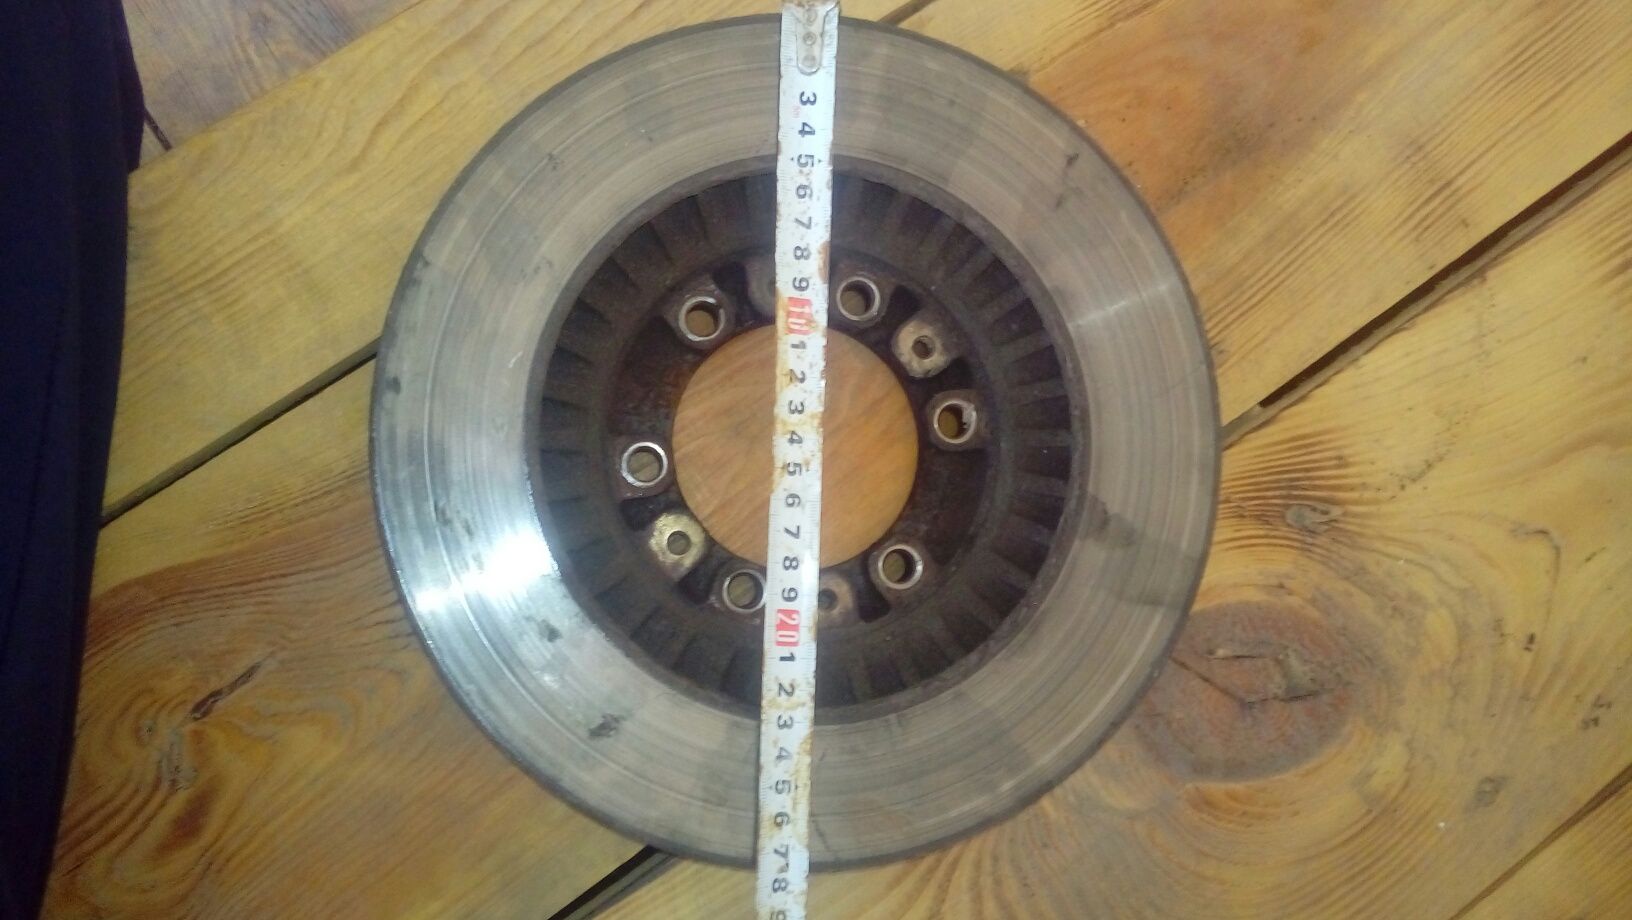 Тормозной передний диск от МИТСУБИСИ 5500 ТЕНГЕ.